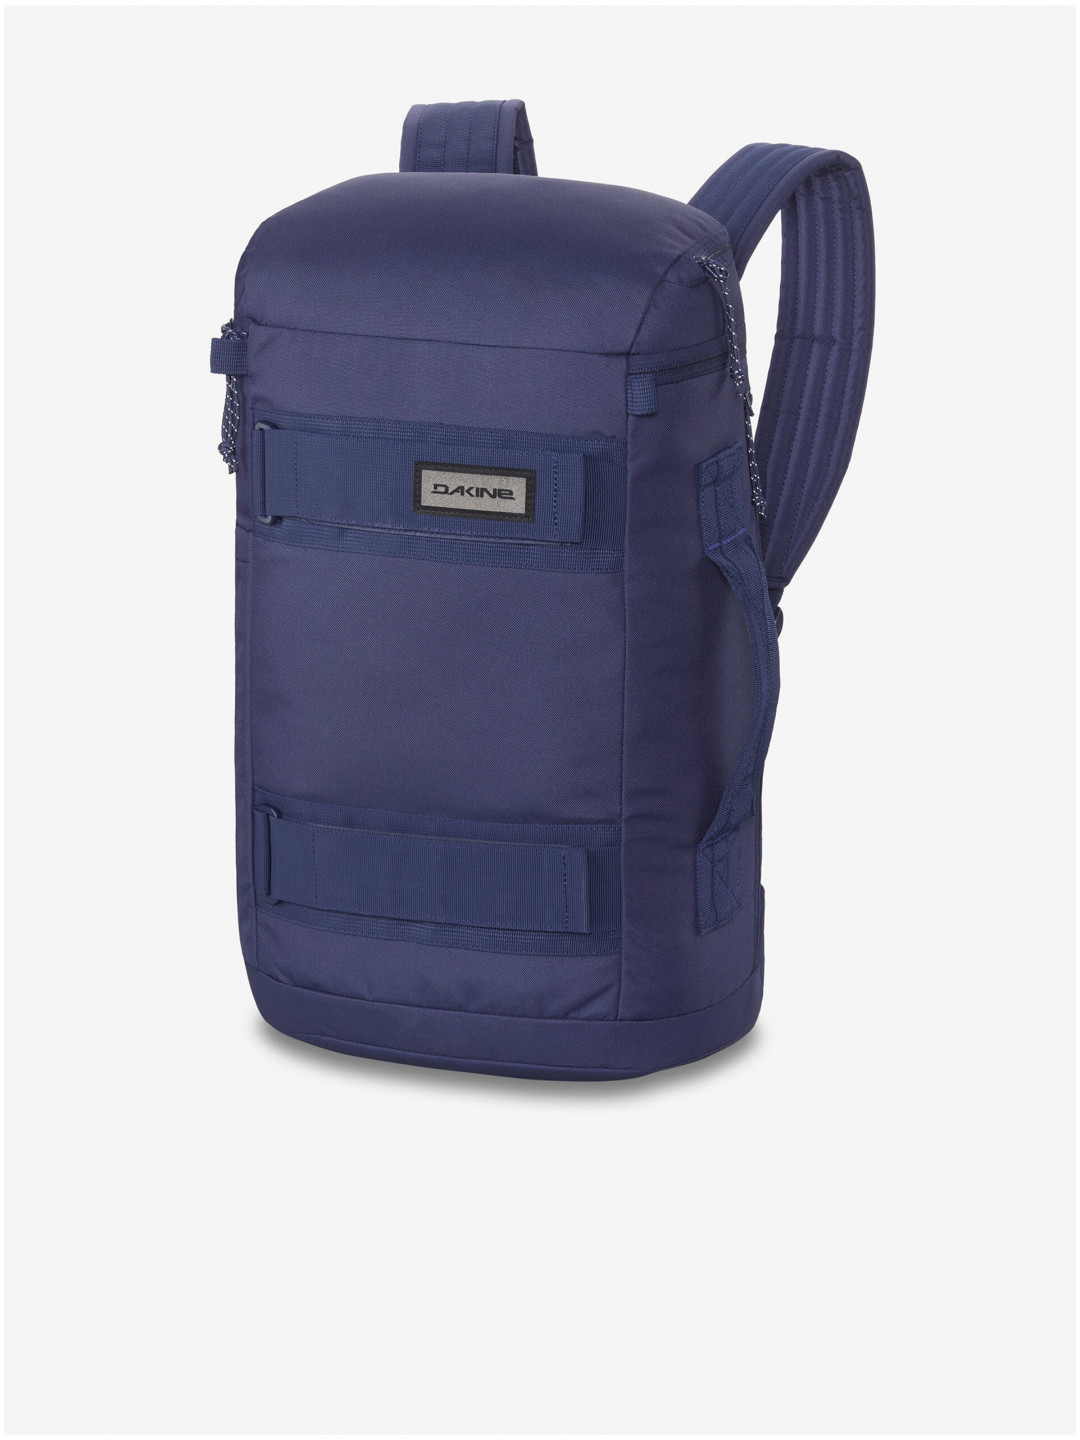 Tmavě modrý batoh Dakine Mission Street Pack 25l